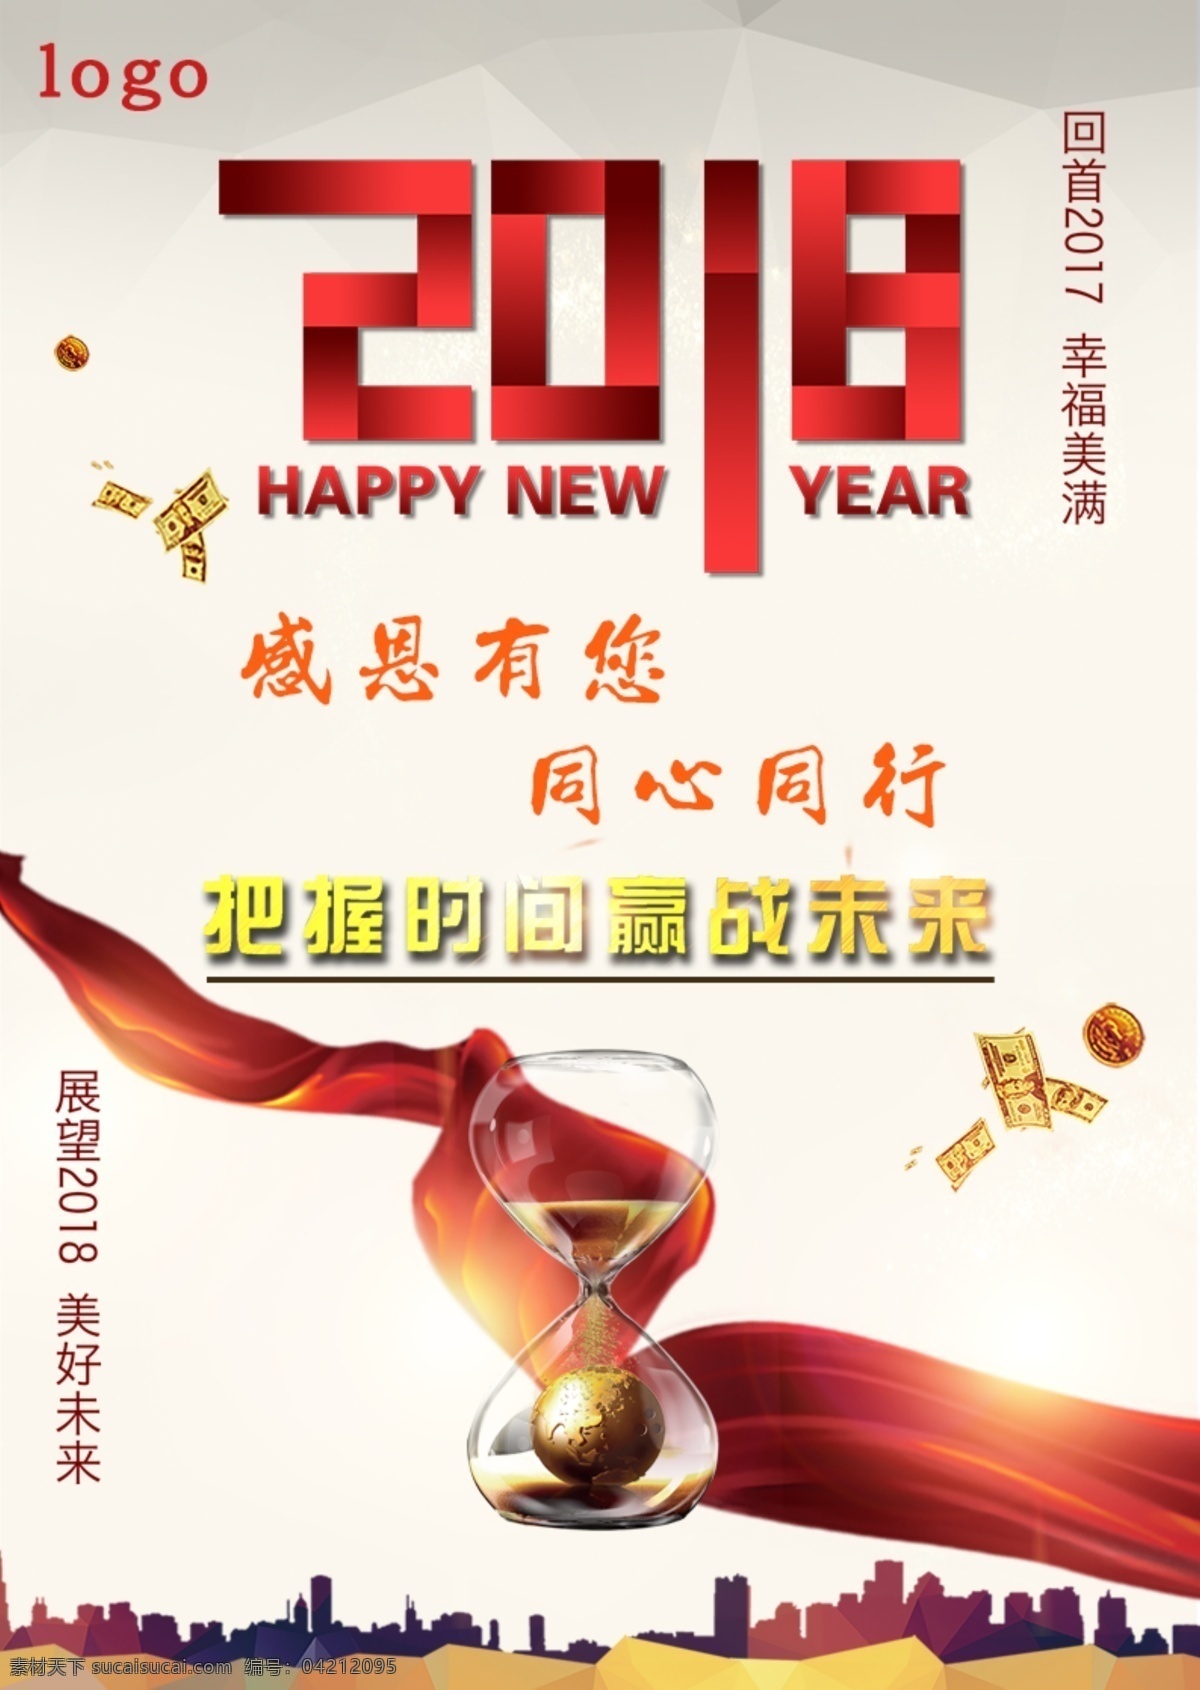 2018 迎新 年 主题 微 信 h5 海报 公司企业 红色 喜庆 新年 迎新年 展板 主题海报